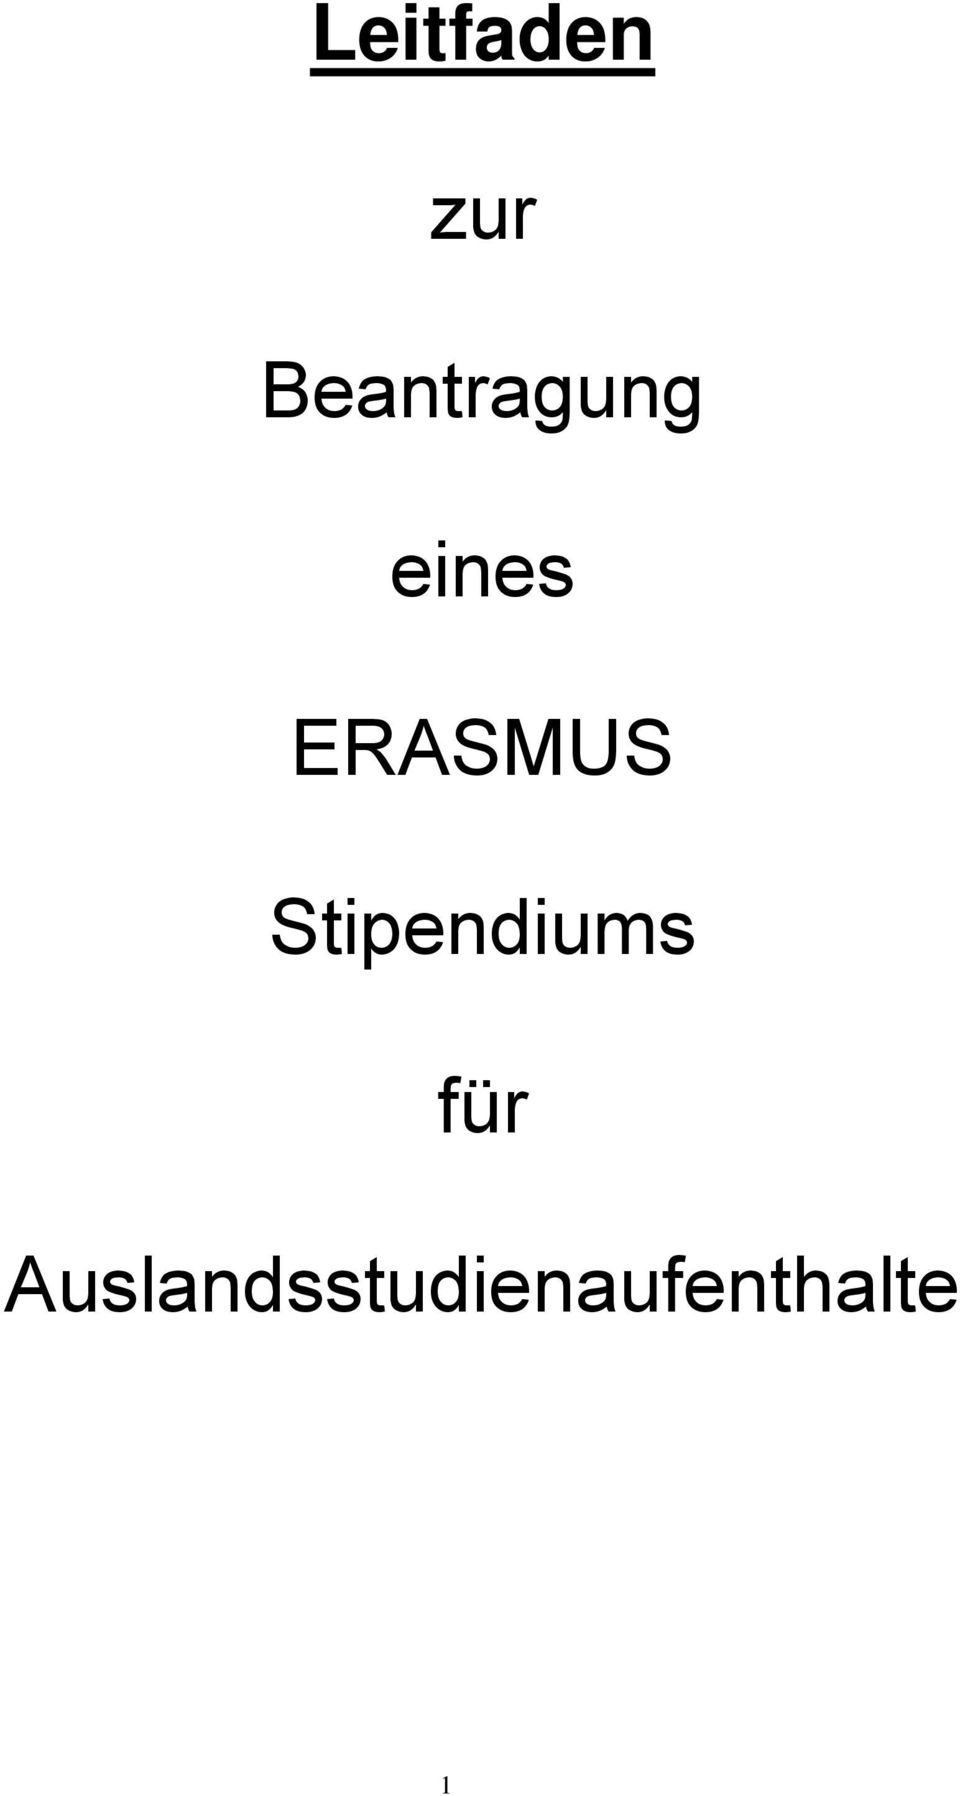 ERASMUS Stipendiums